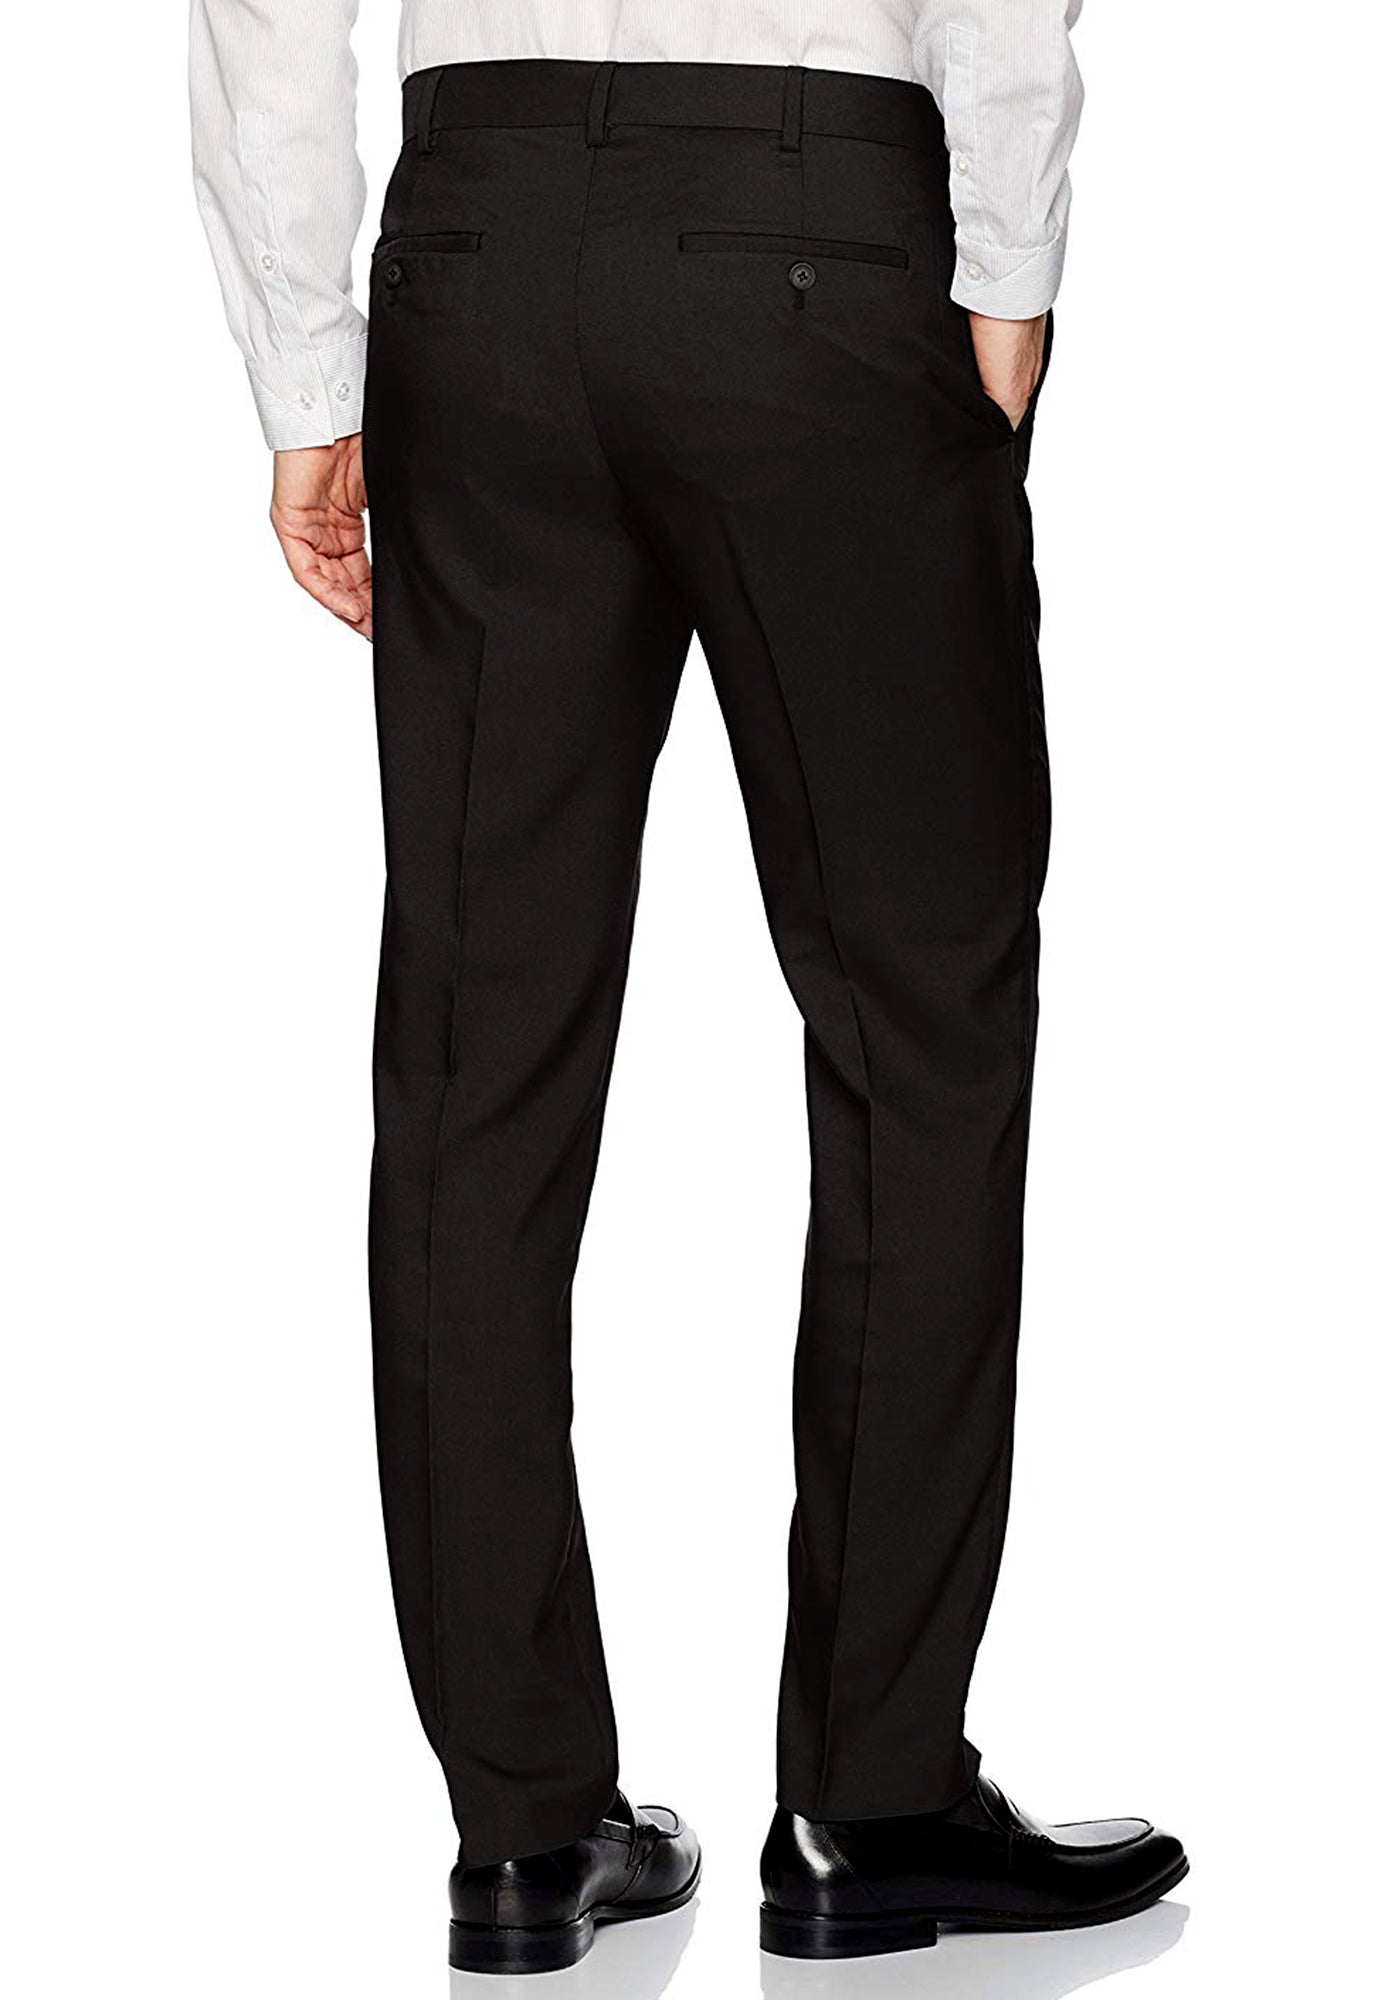 Men's Black, Flat Front, Comfort-Waist Dress Pants - 99tux